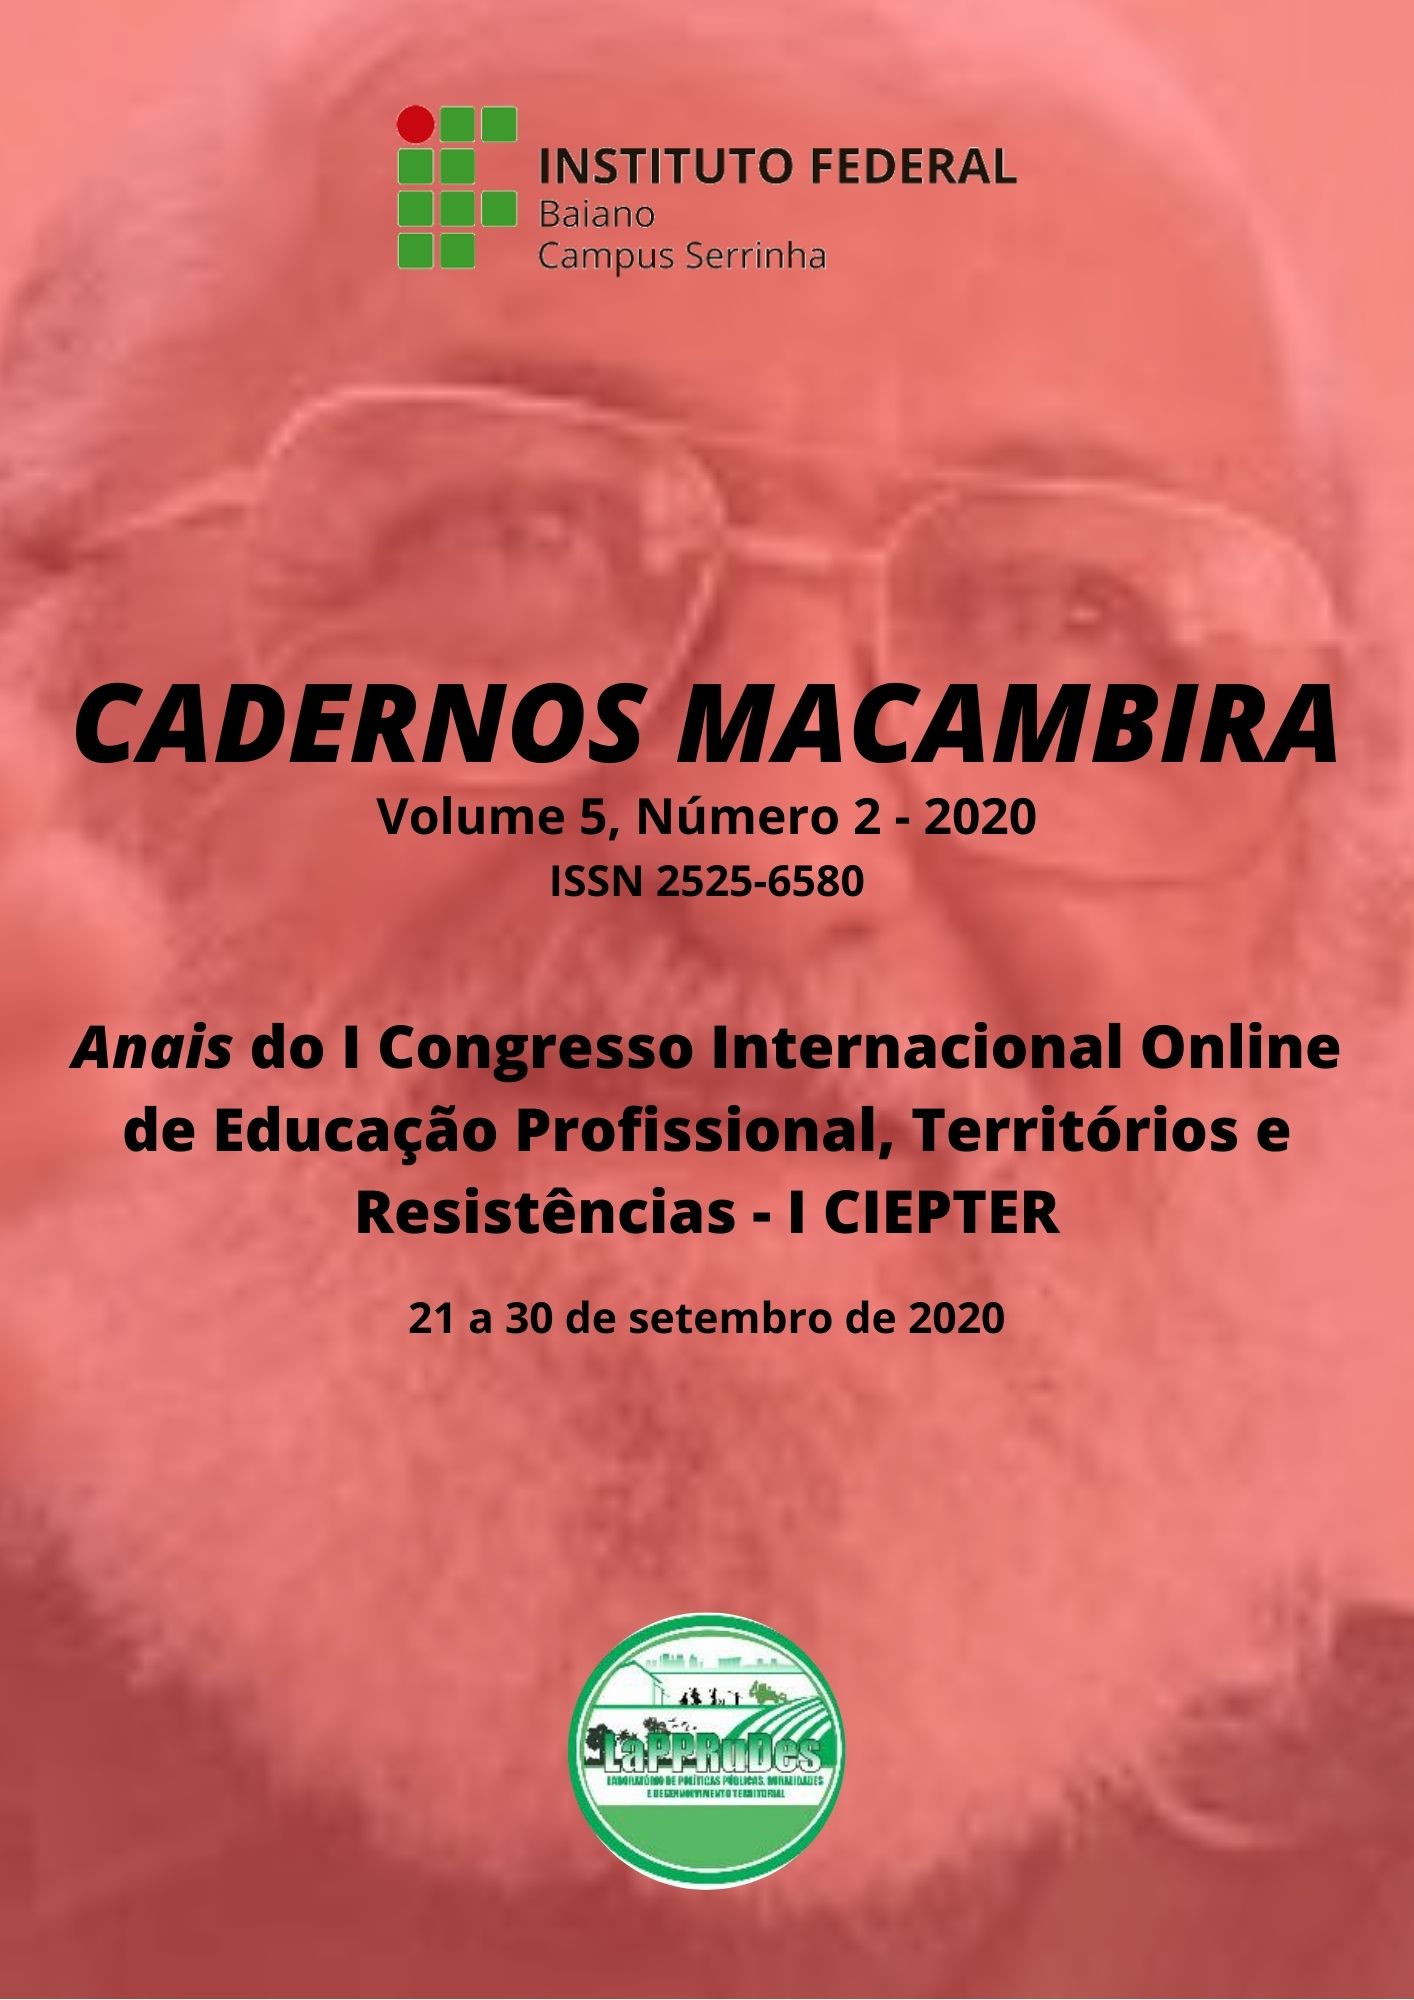 					View Vol. 5 No. 2 (2020): Cadernos Macambira: Anais do I Congresso Internacional Online de Educação Profissional, Territórios e Resistências - I CIEPTER
				